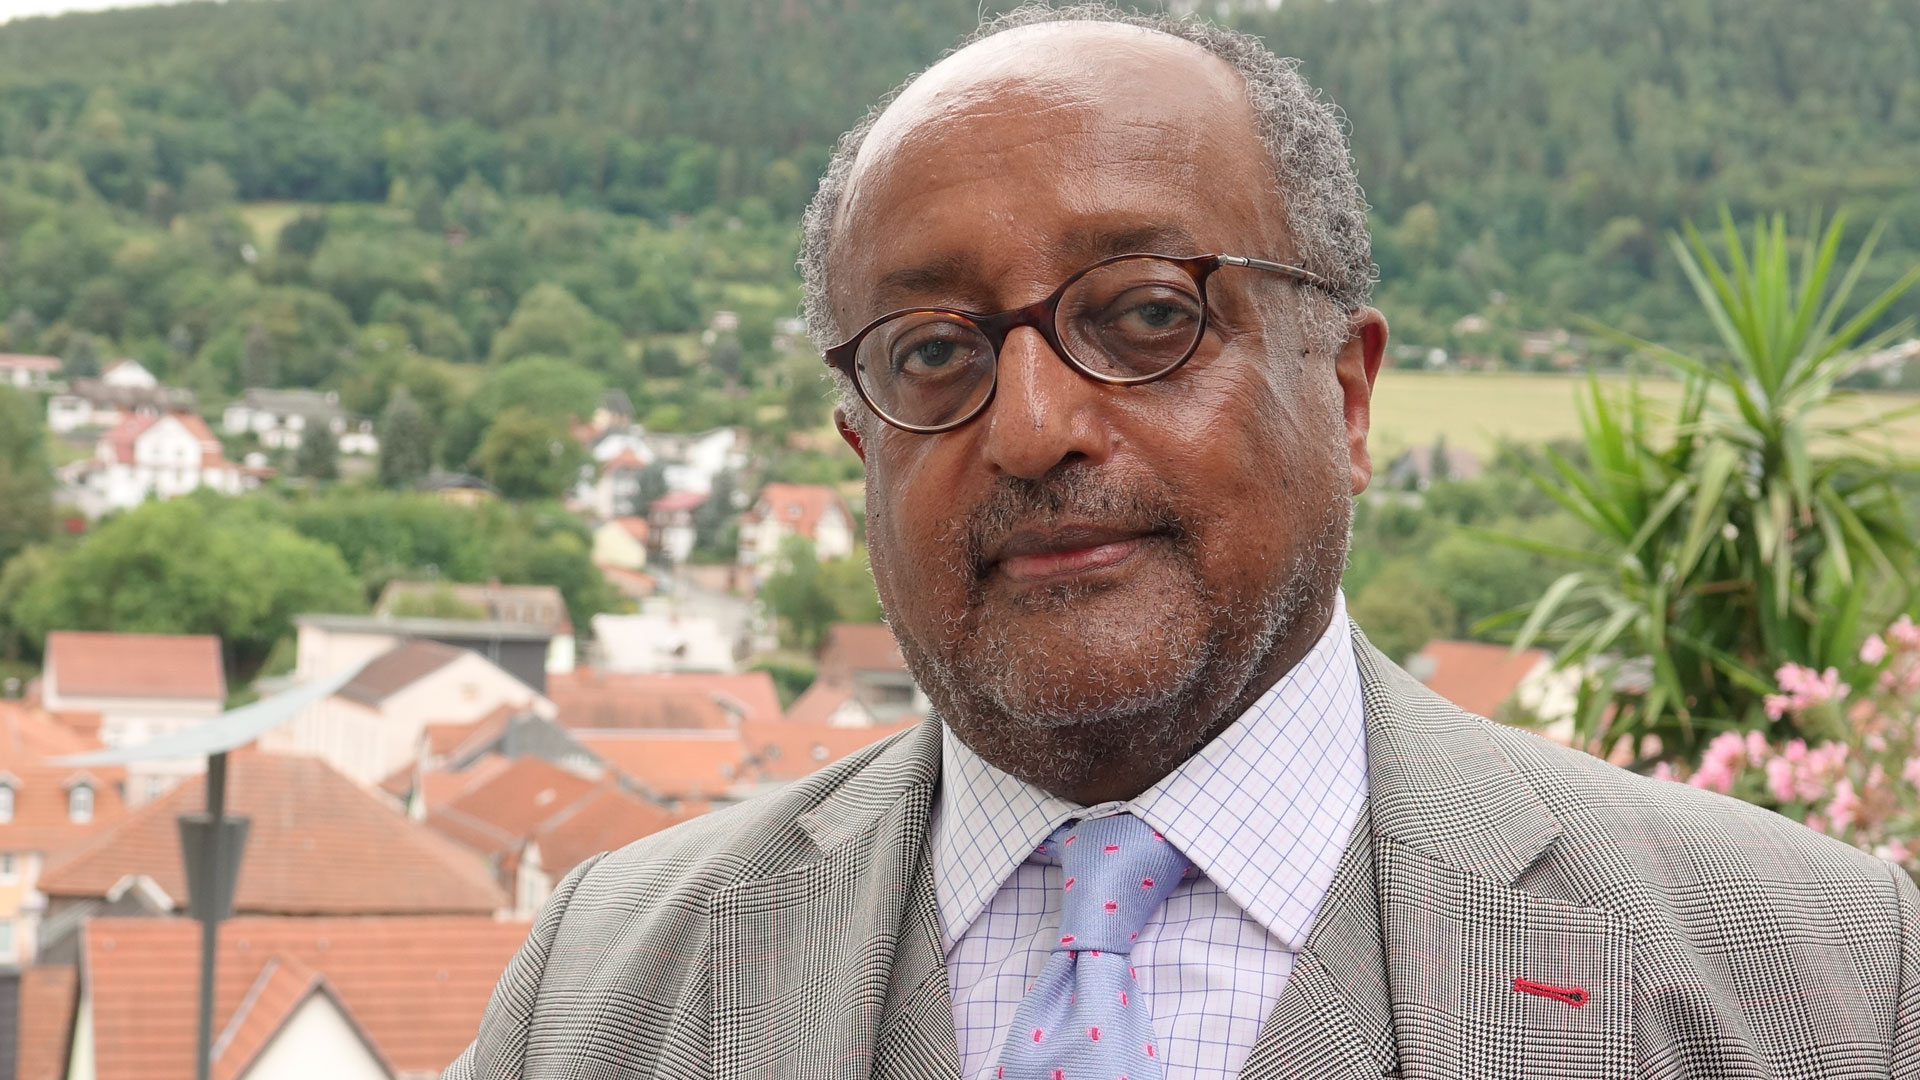 Asfa-Wossen Asserate hofft, dass die Vergabe des Nobelpreises gute Auswirkungen für Äthiopien hat